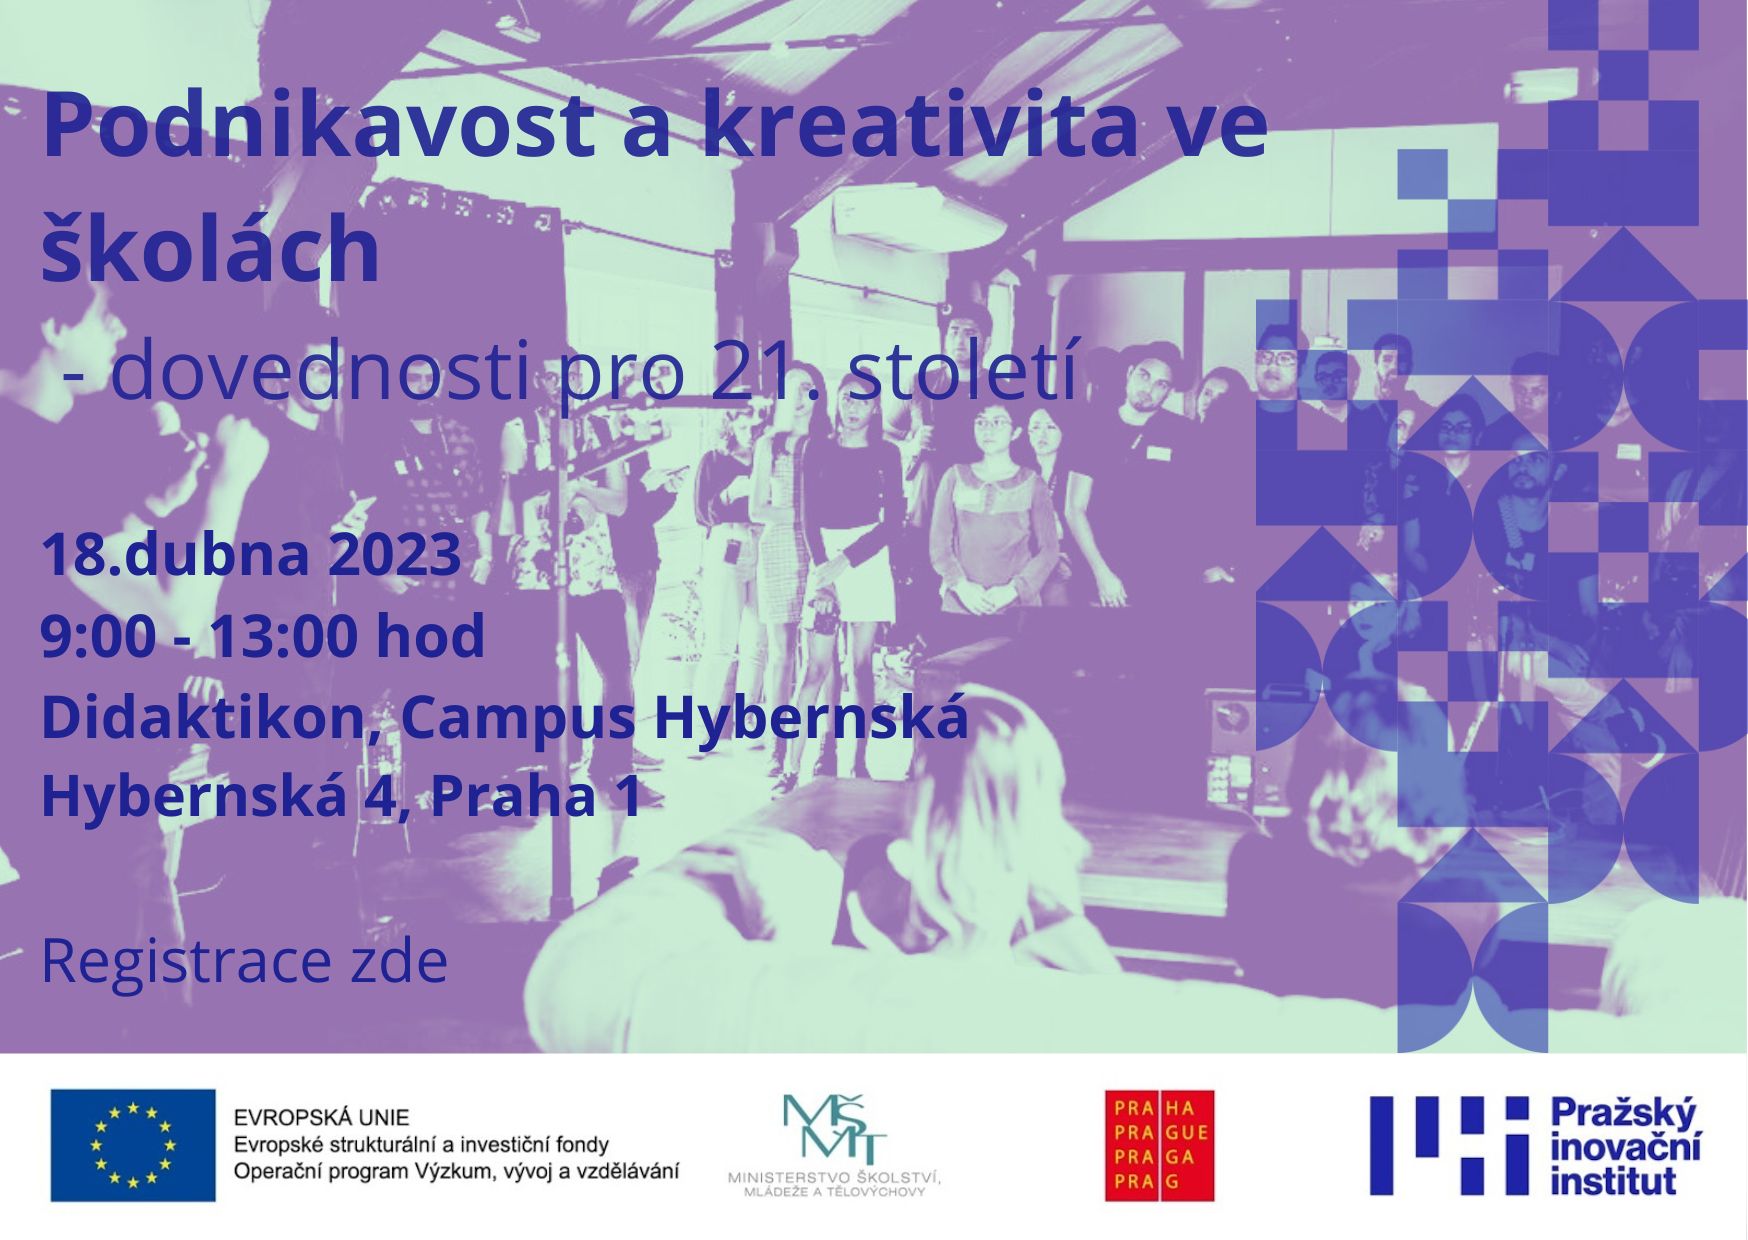 Pozvánka na minikonferenci Podnikavost a kreativita ve školách - dovednosti pro 21. století